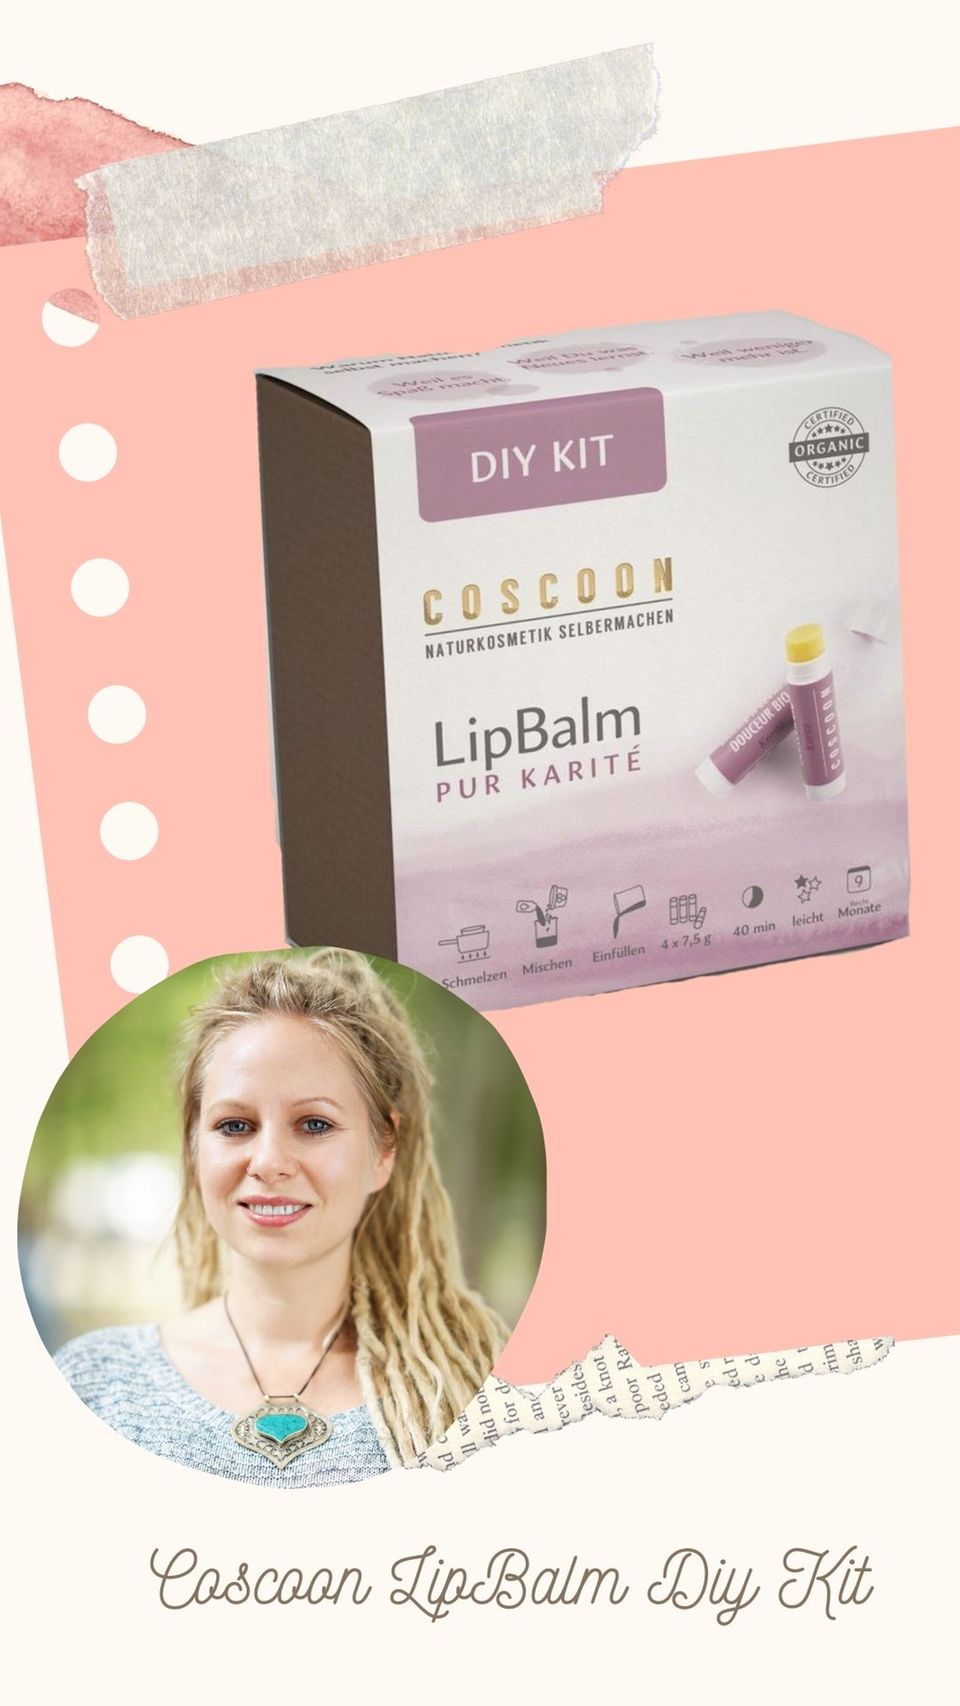 ipBalm DIY Kit von Coscoon